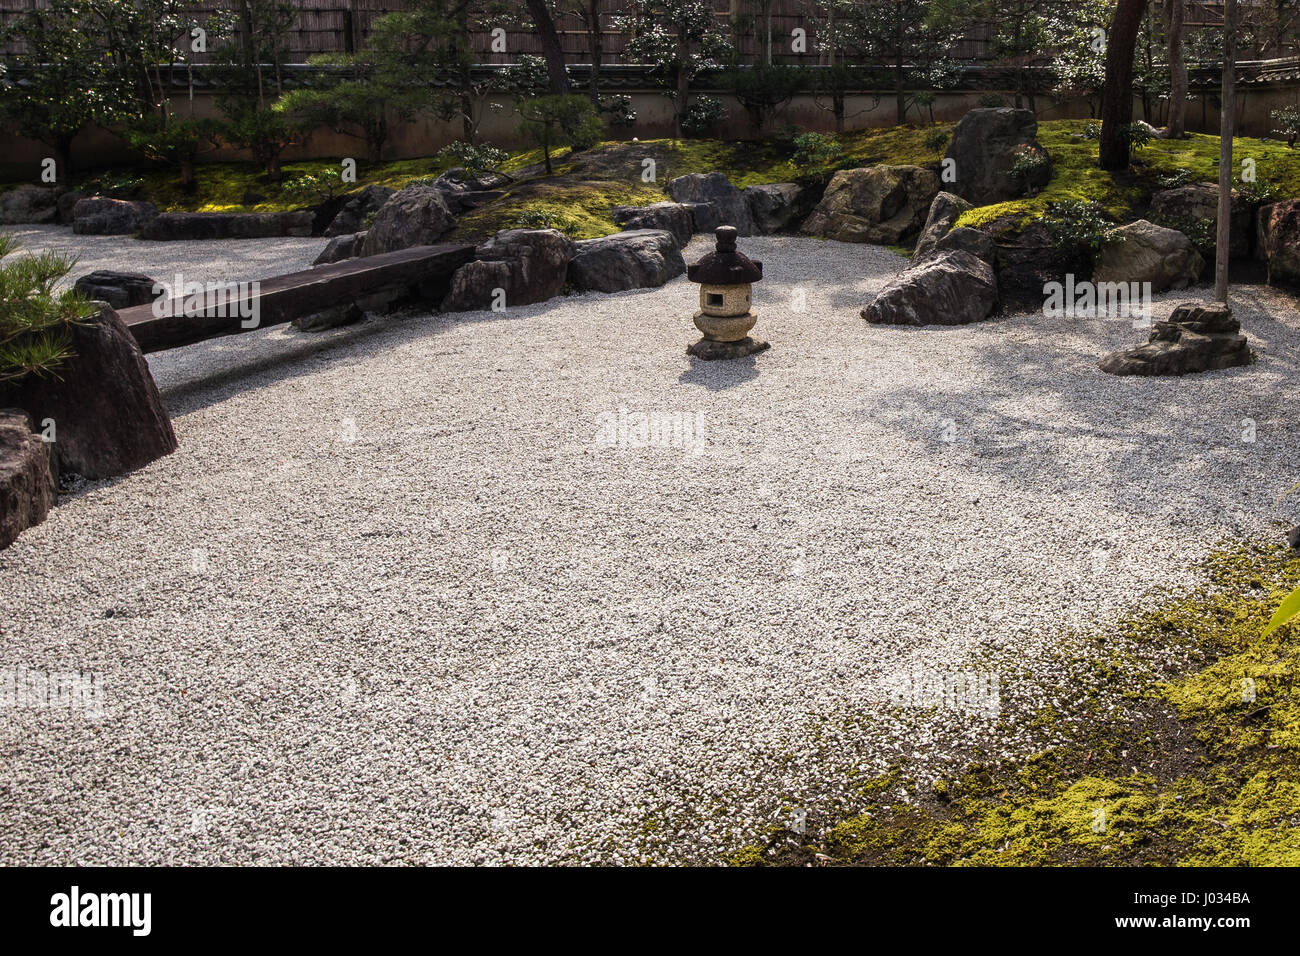 Dry Stone Garden am Tsurugaoka Hachimangu Schrein - Garten entstand im Jahr 1980 zum 800. Jahrestag der Tsurugaoka Hachimangu Schrein Stockfoto